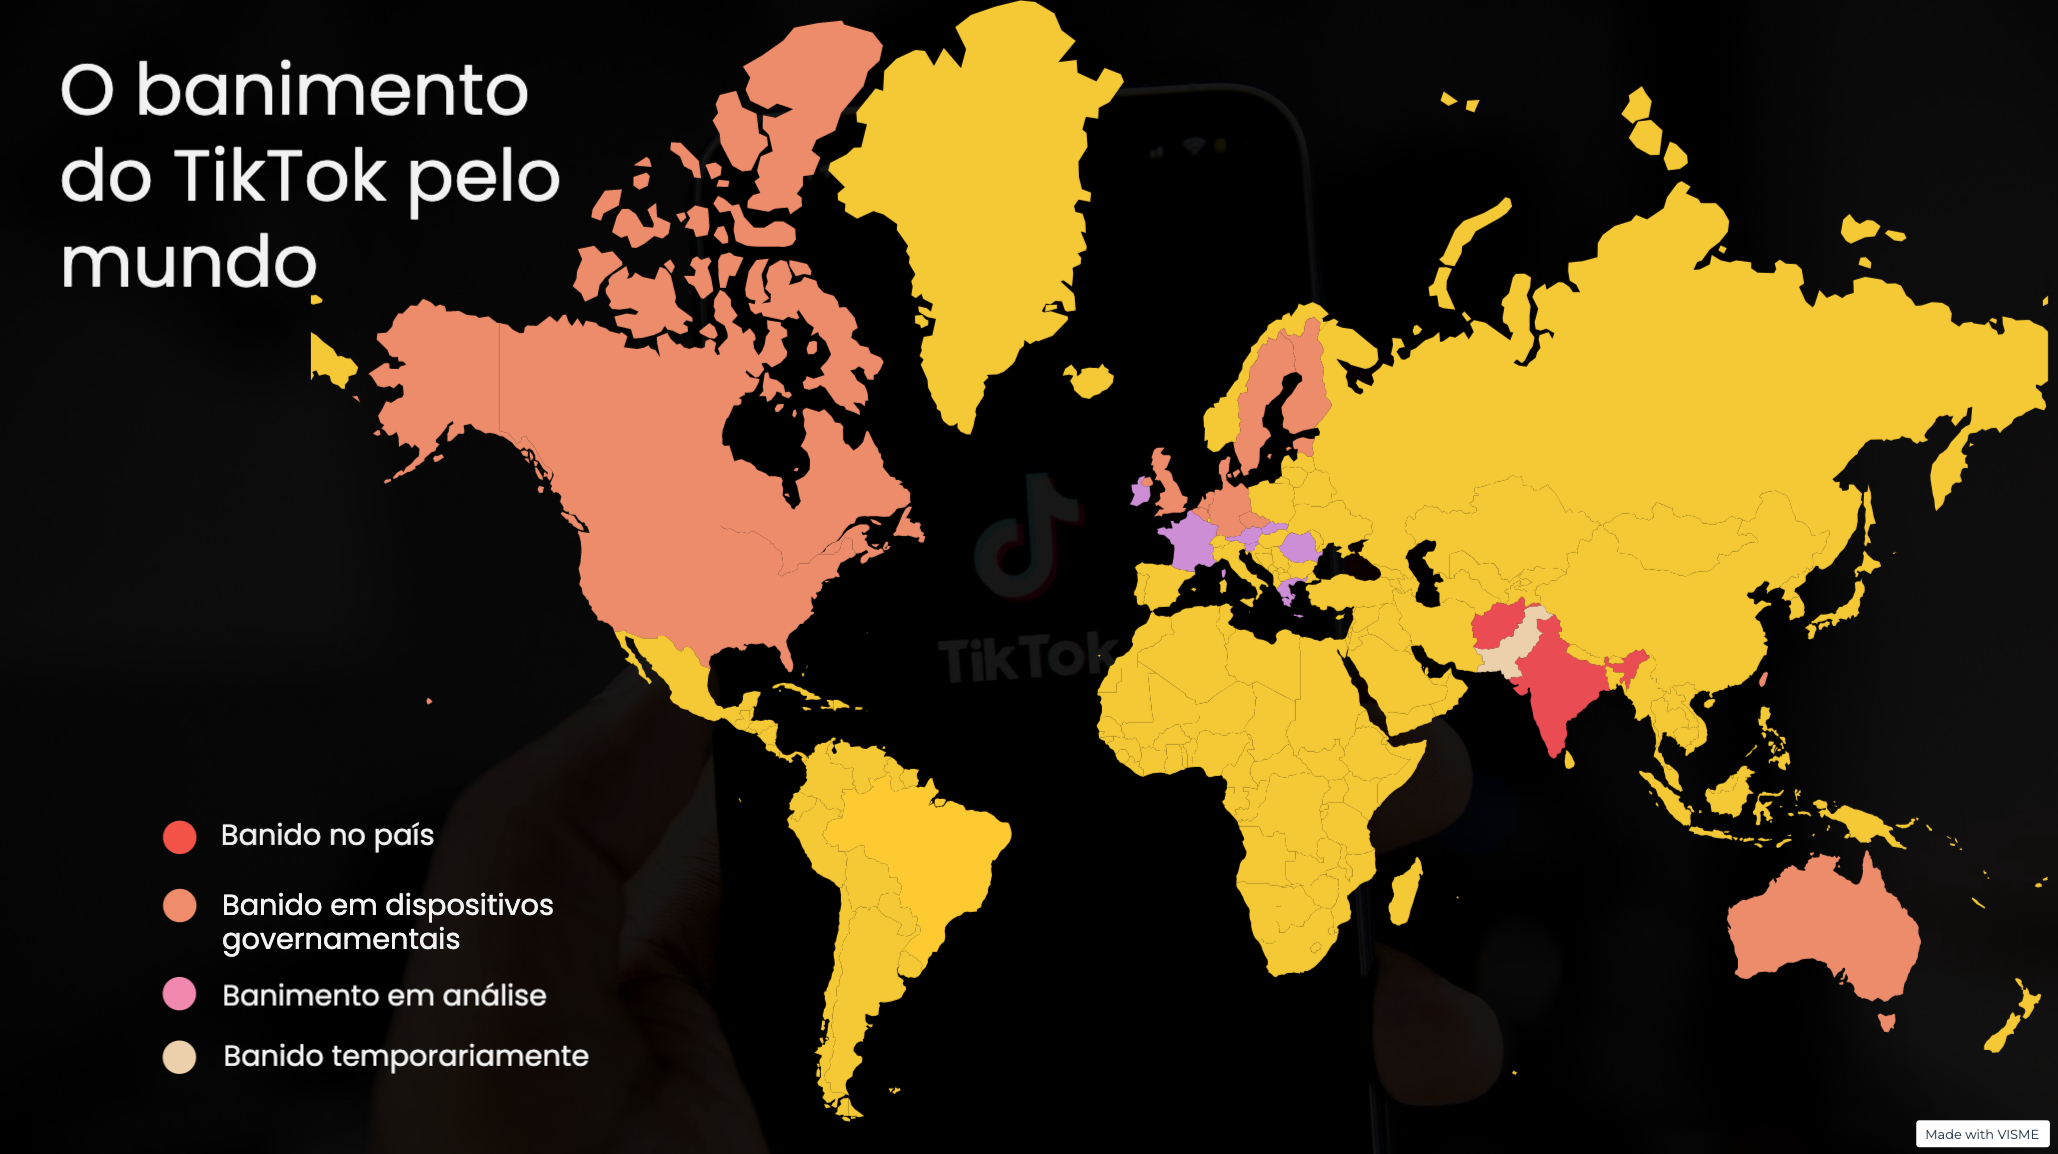 Mapa mundial com países que já baniram o tiktok